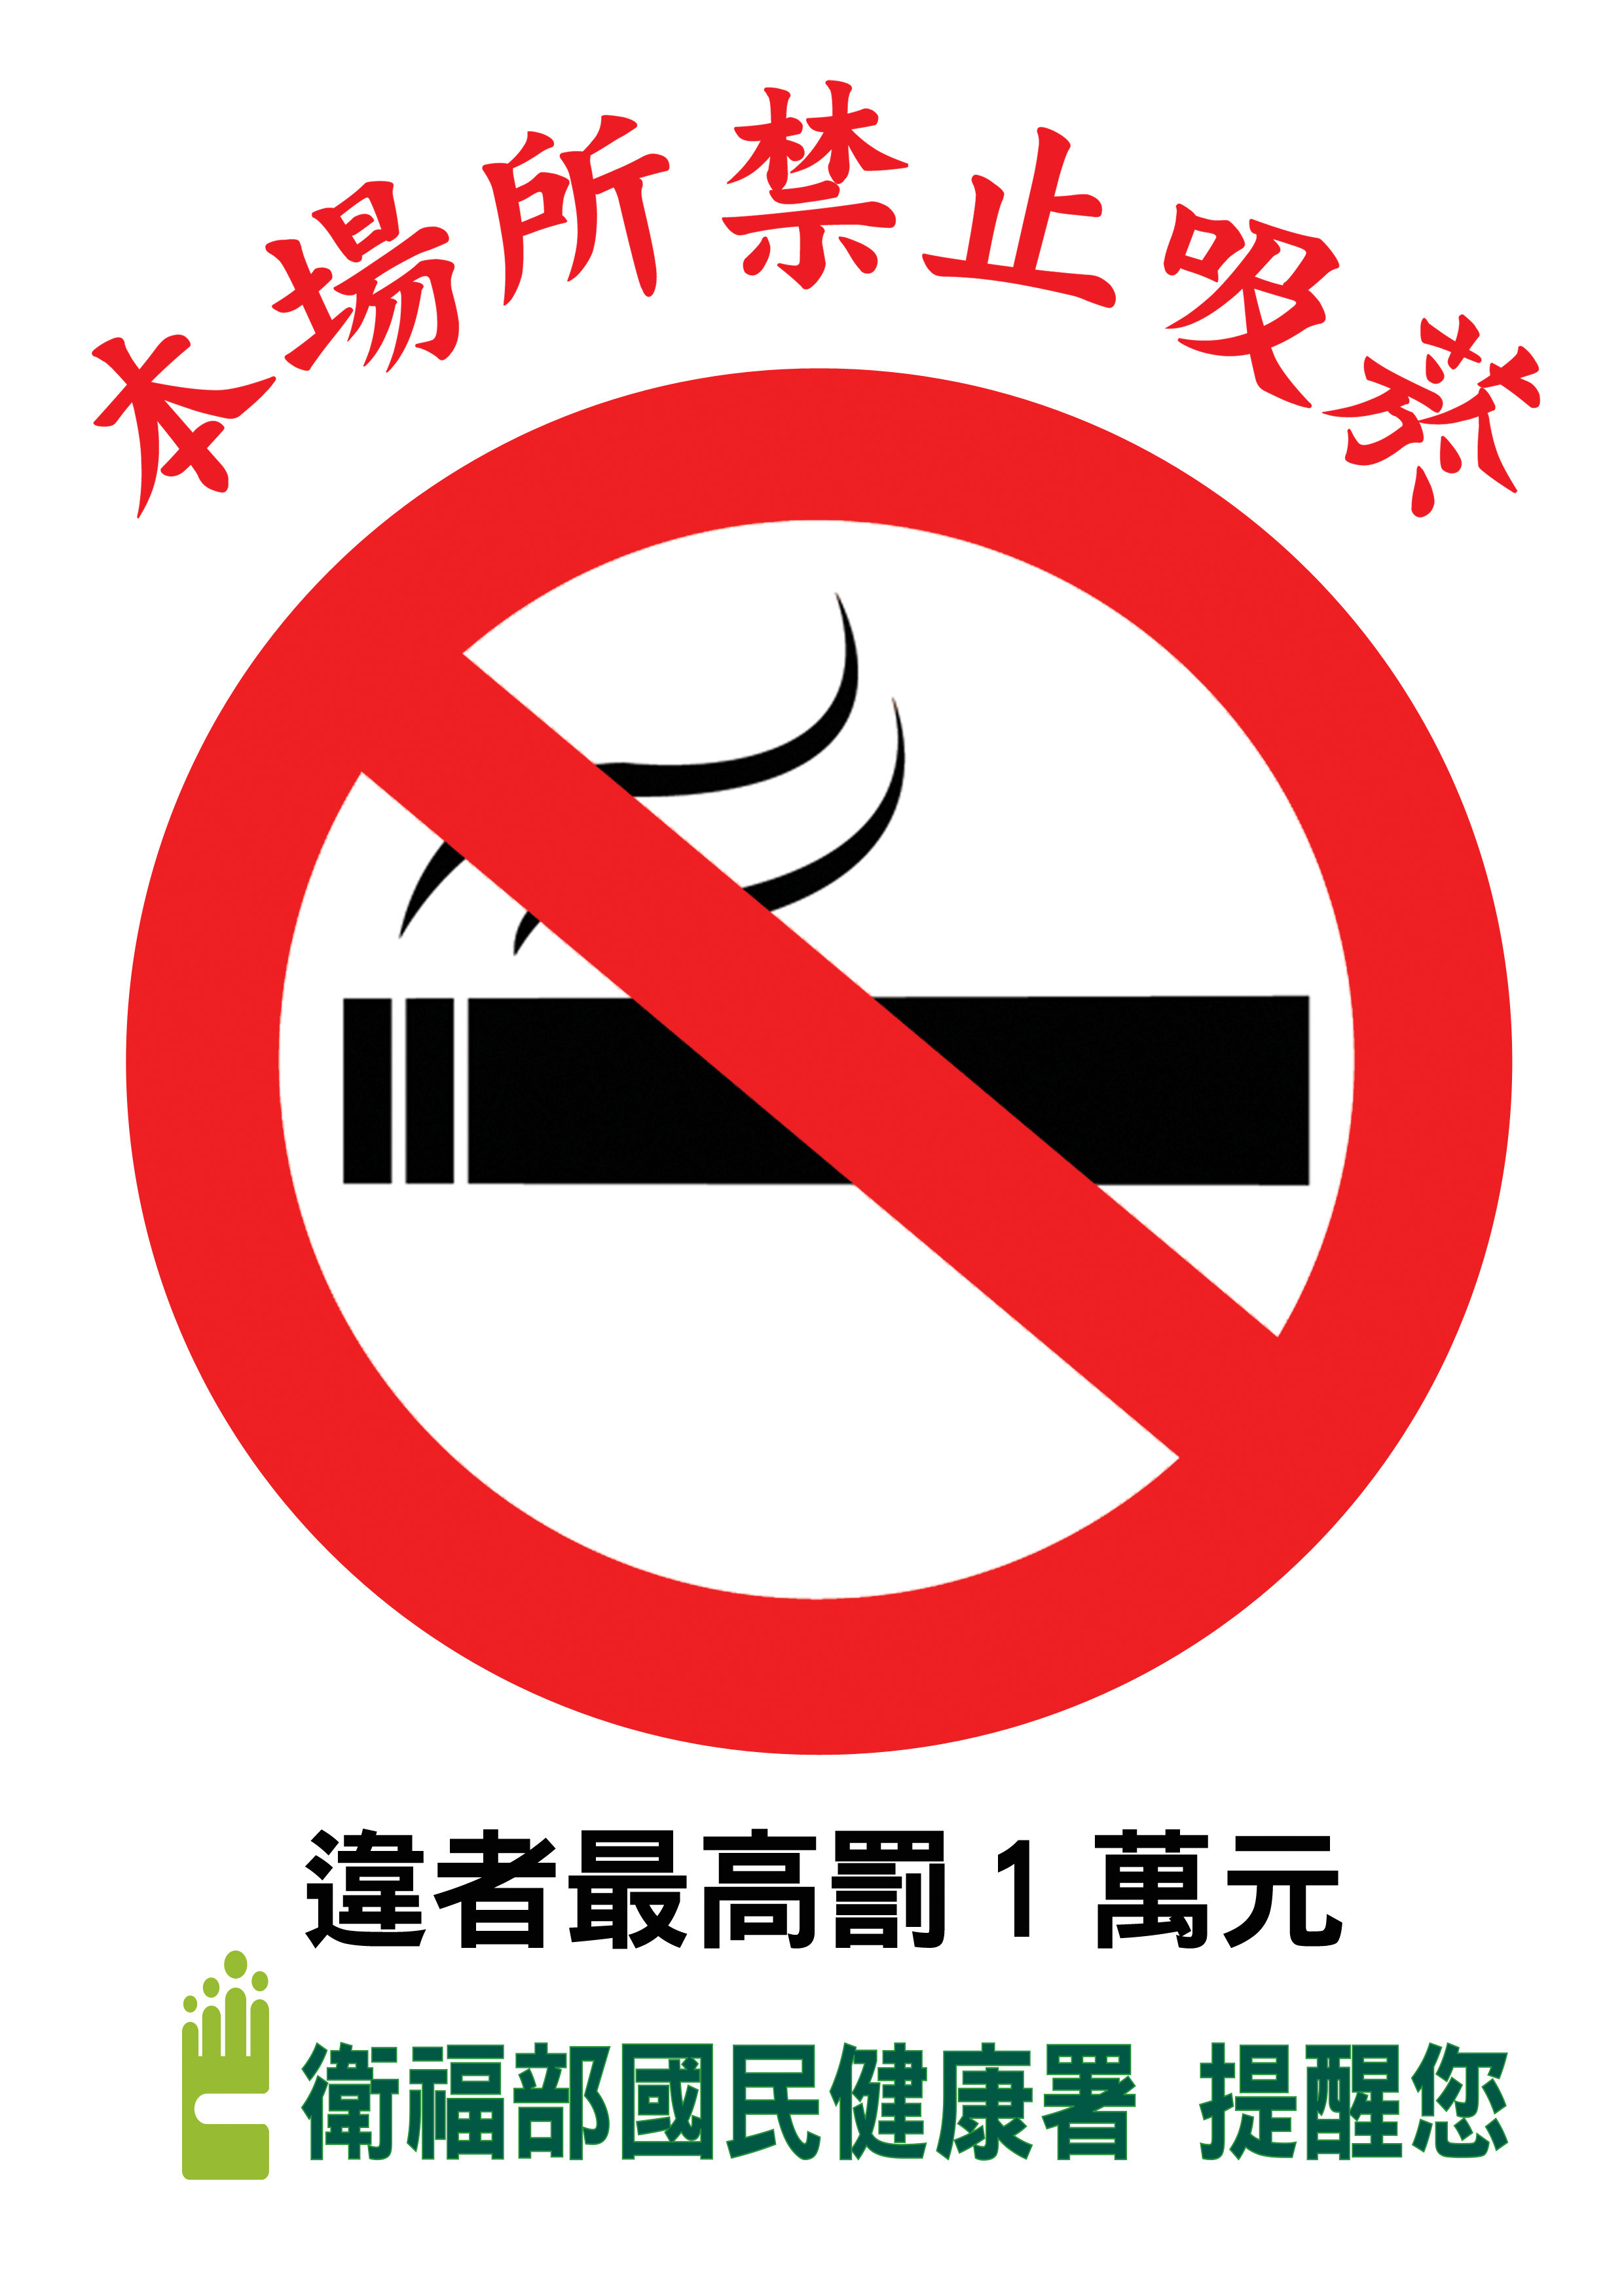 本場所禁止吸菸 違者最高罰1萬元 明細內容 健康九九網站